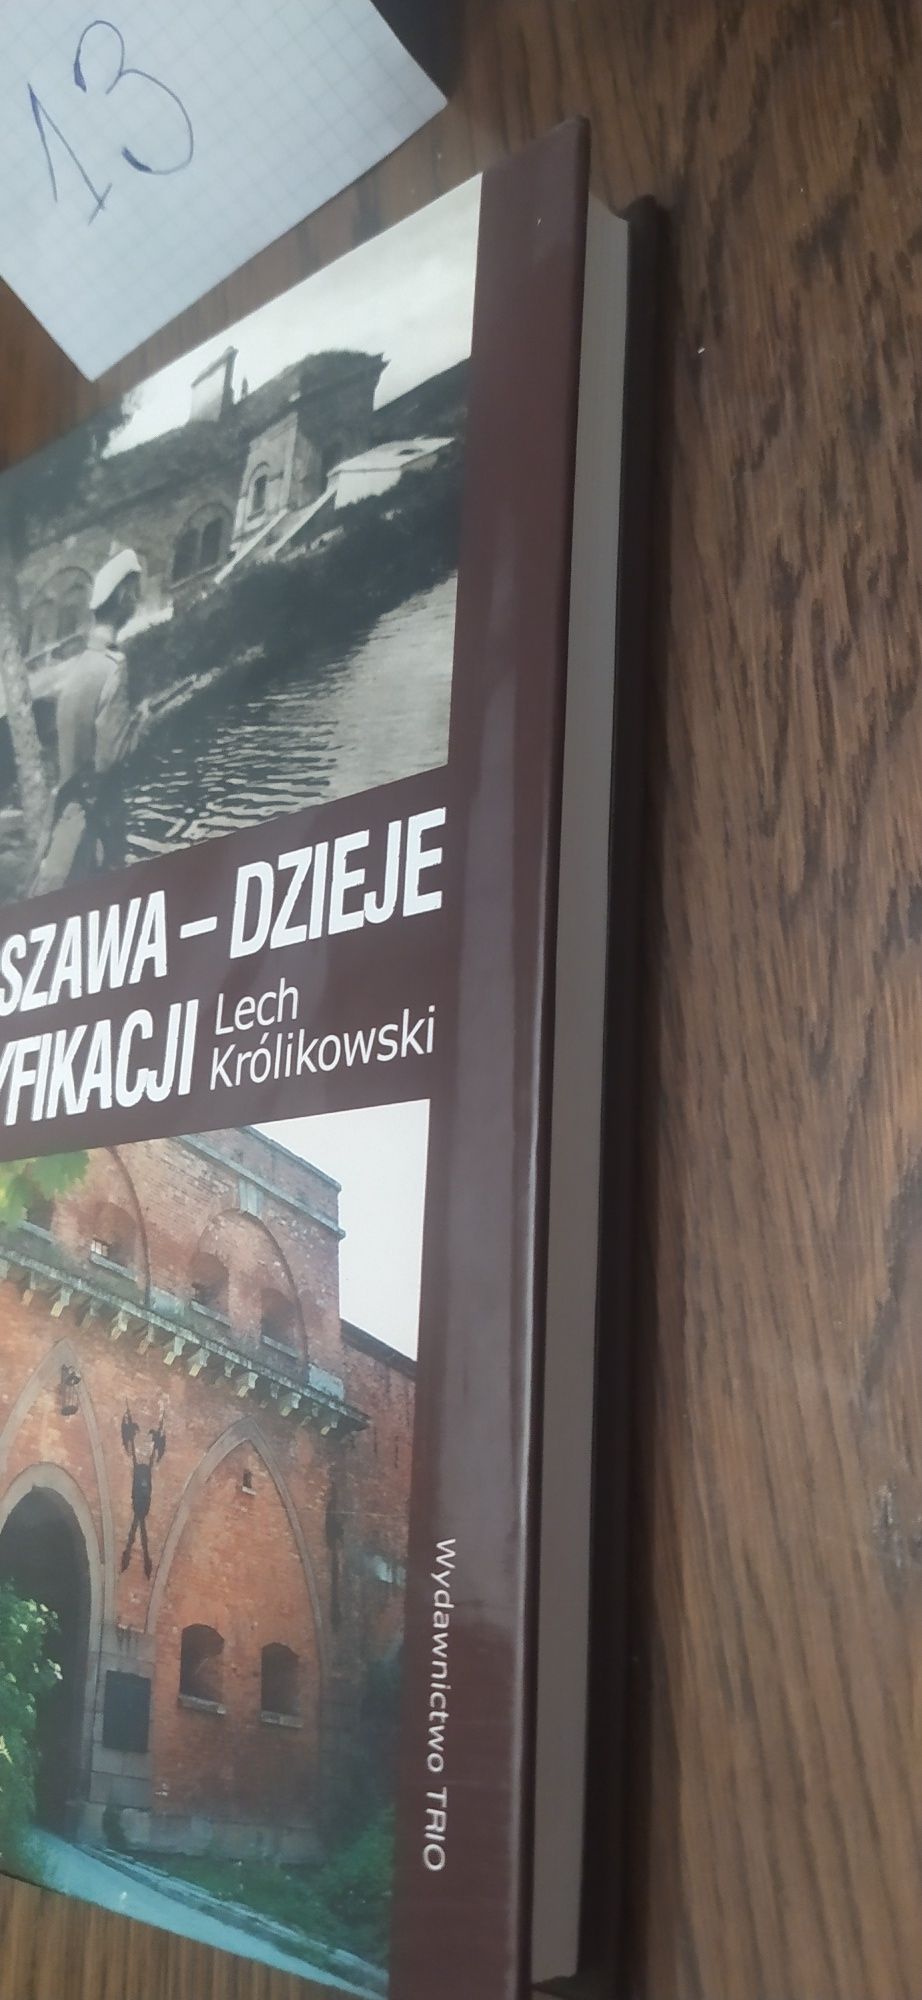 Warszawa-Dzieje Fortyfikacji Lech Królikowski